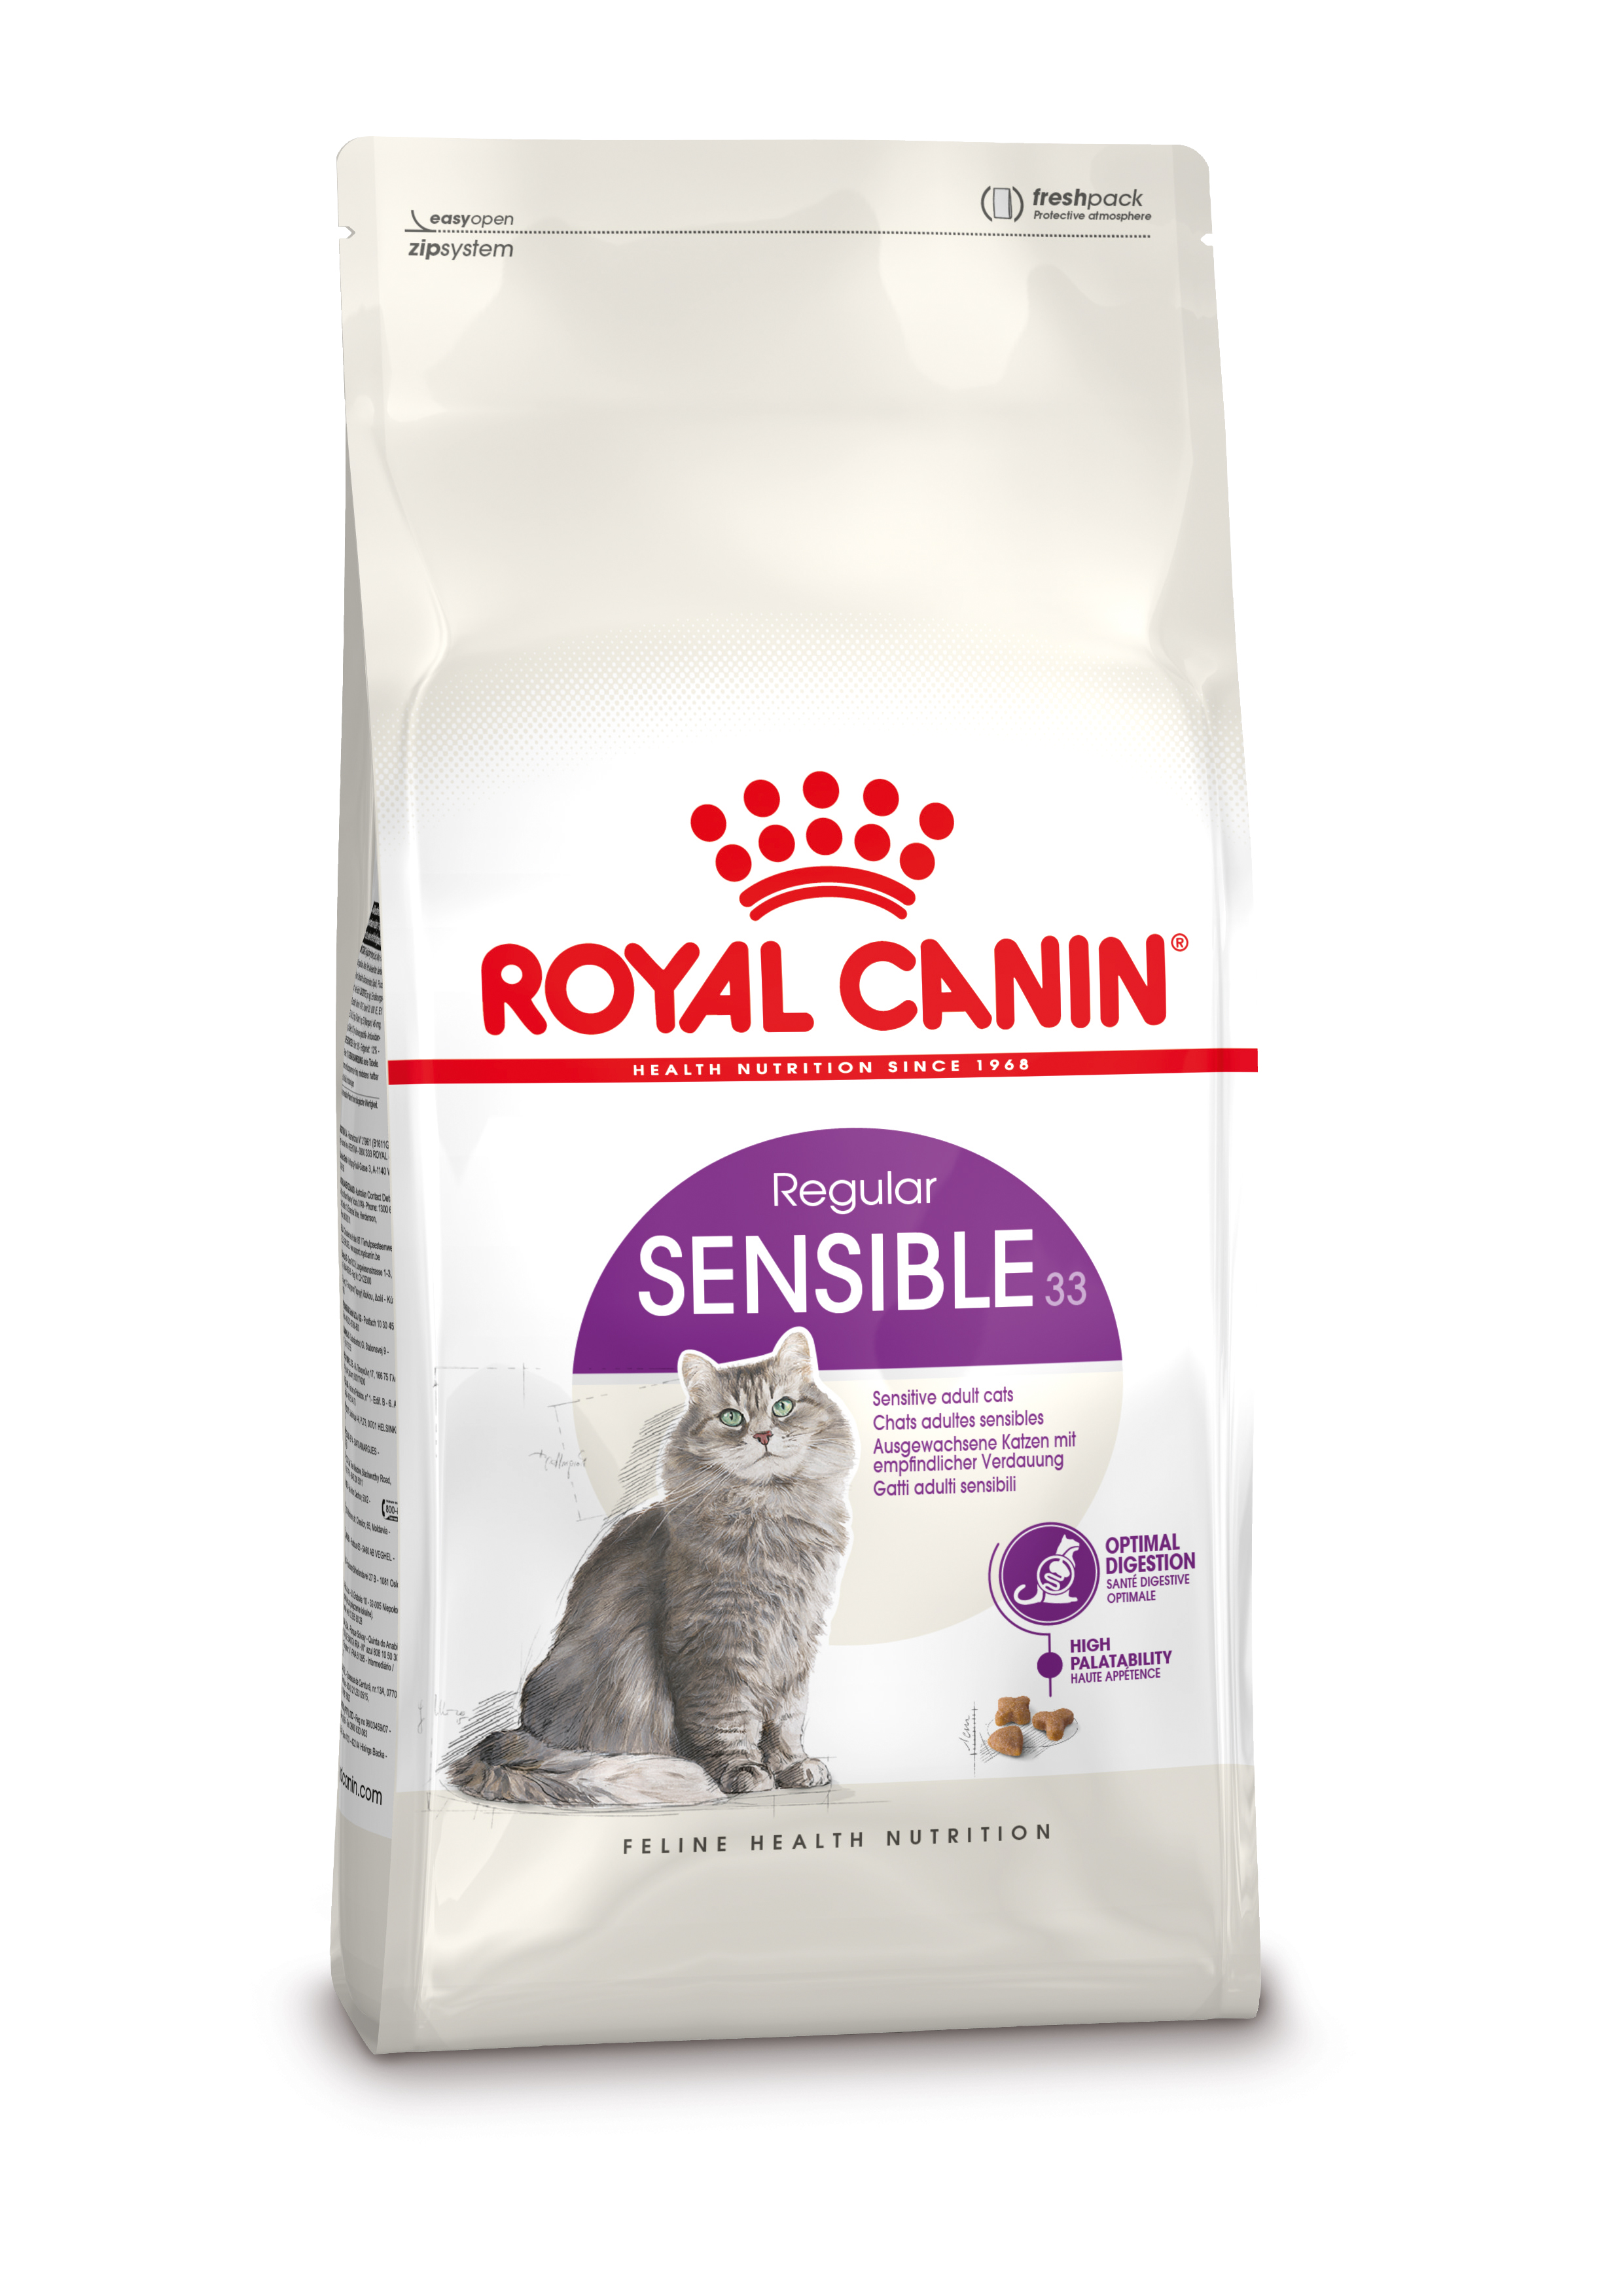 Afbeelding Royal Canin Sensible 33 kattenvoer 4 kg door Brekz.nl